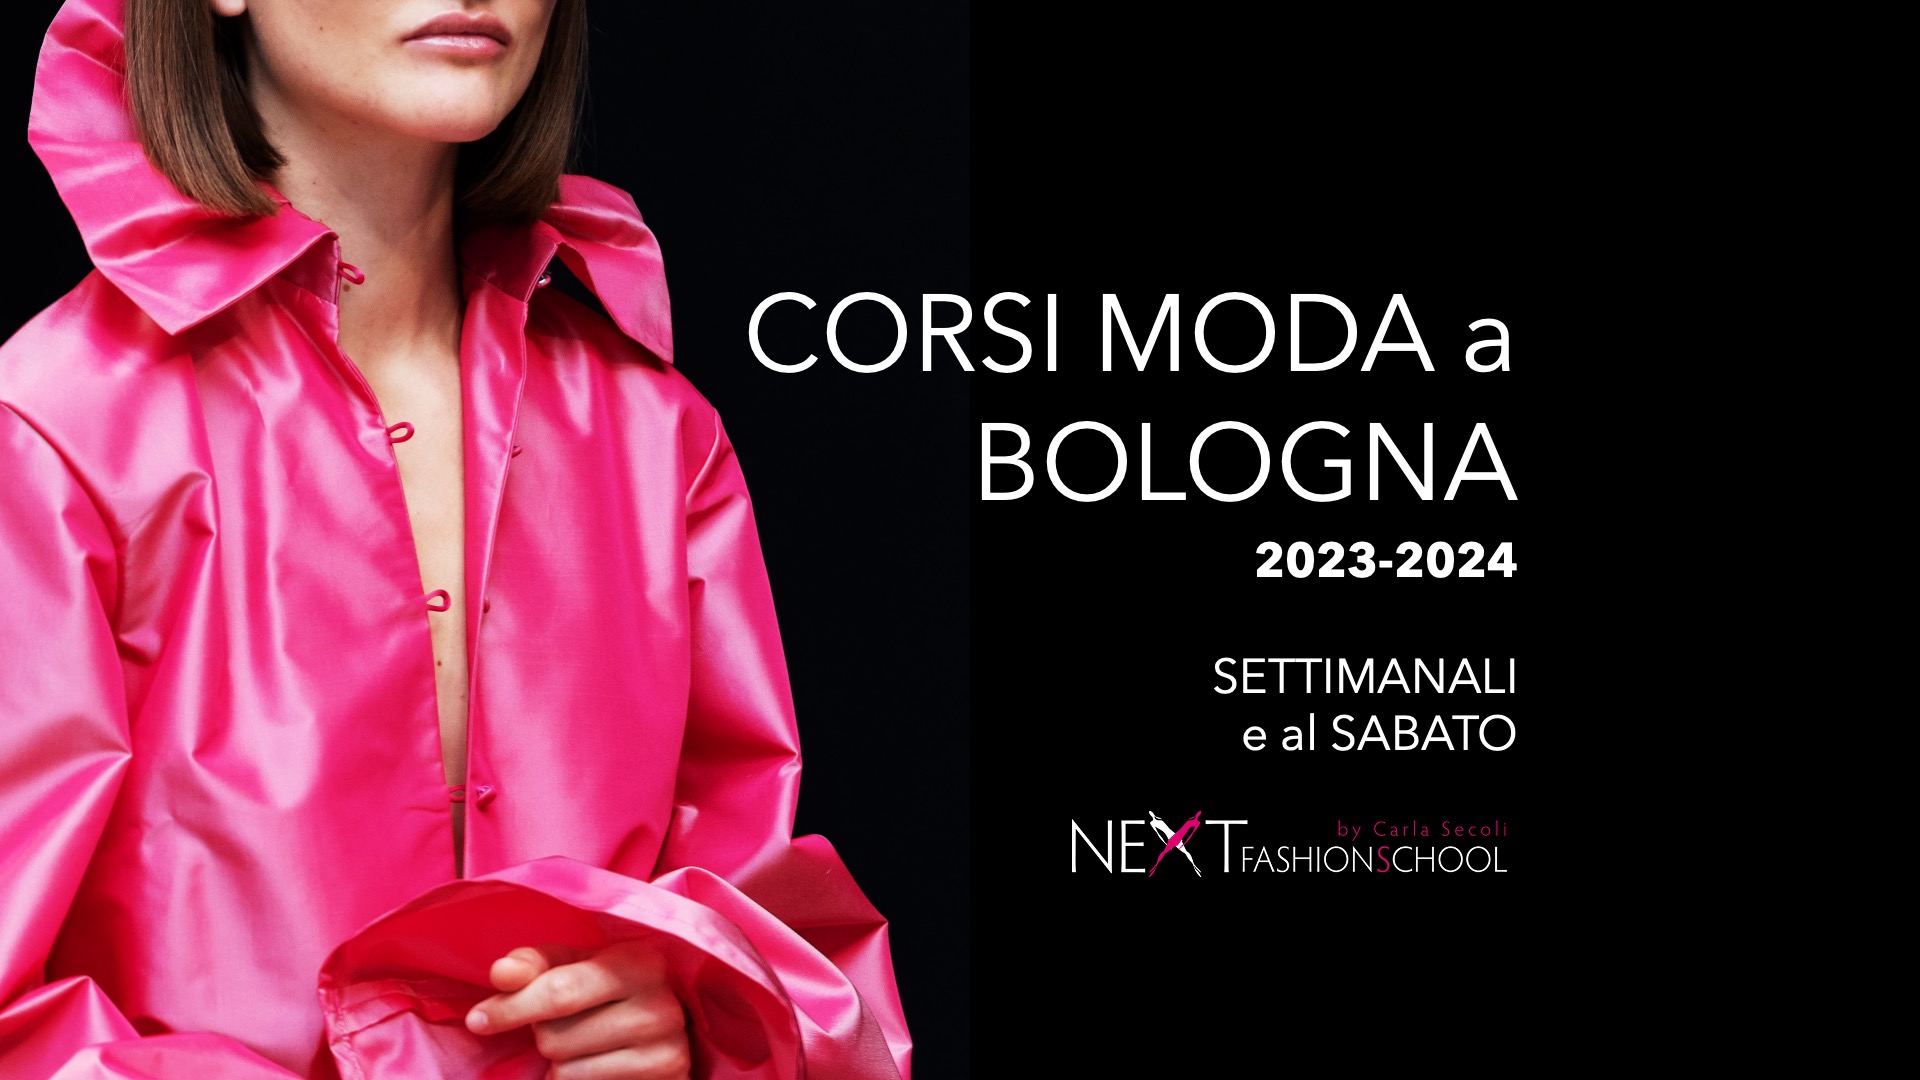 Fashion courses in Bologna 2023-2024